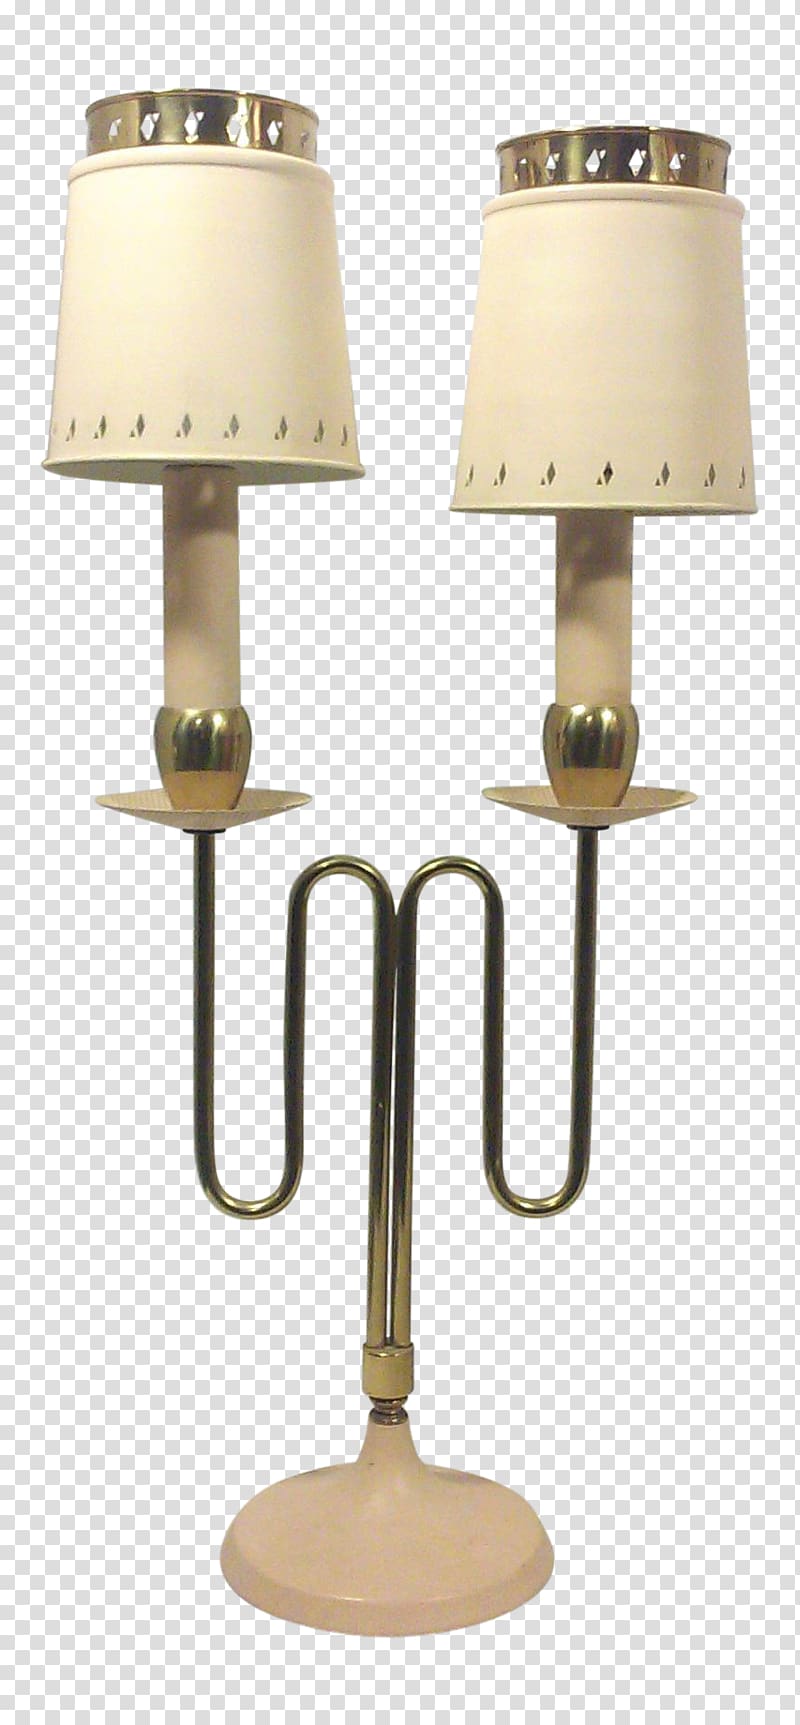 Lampe de bureau Table Brass Bouillotte, lamp transparent background PNG clipart